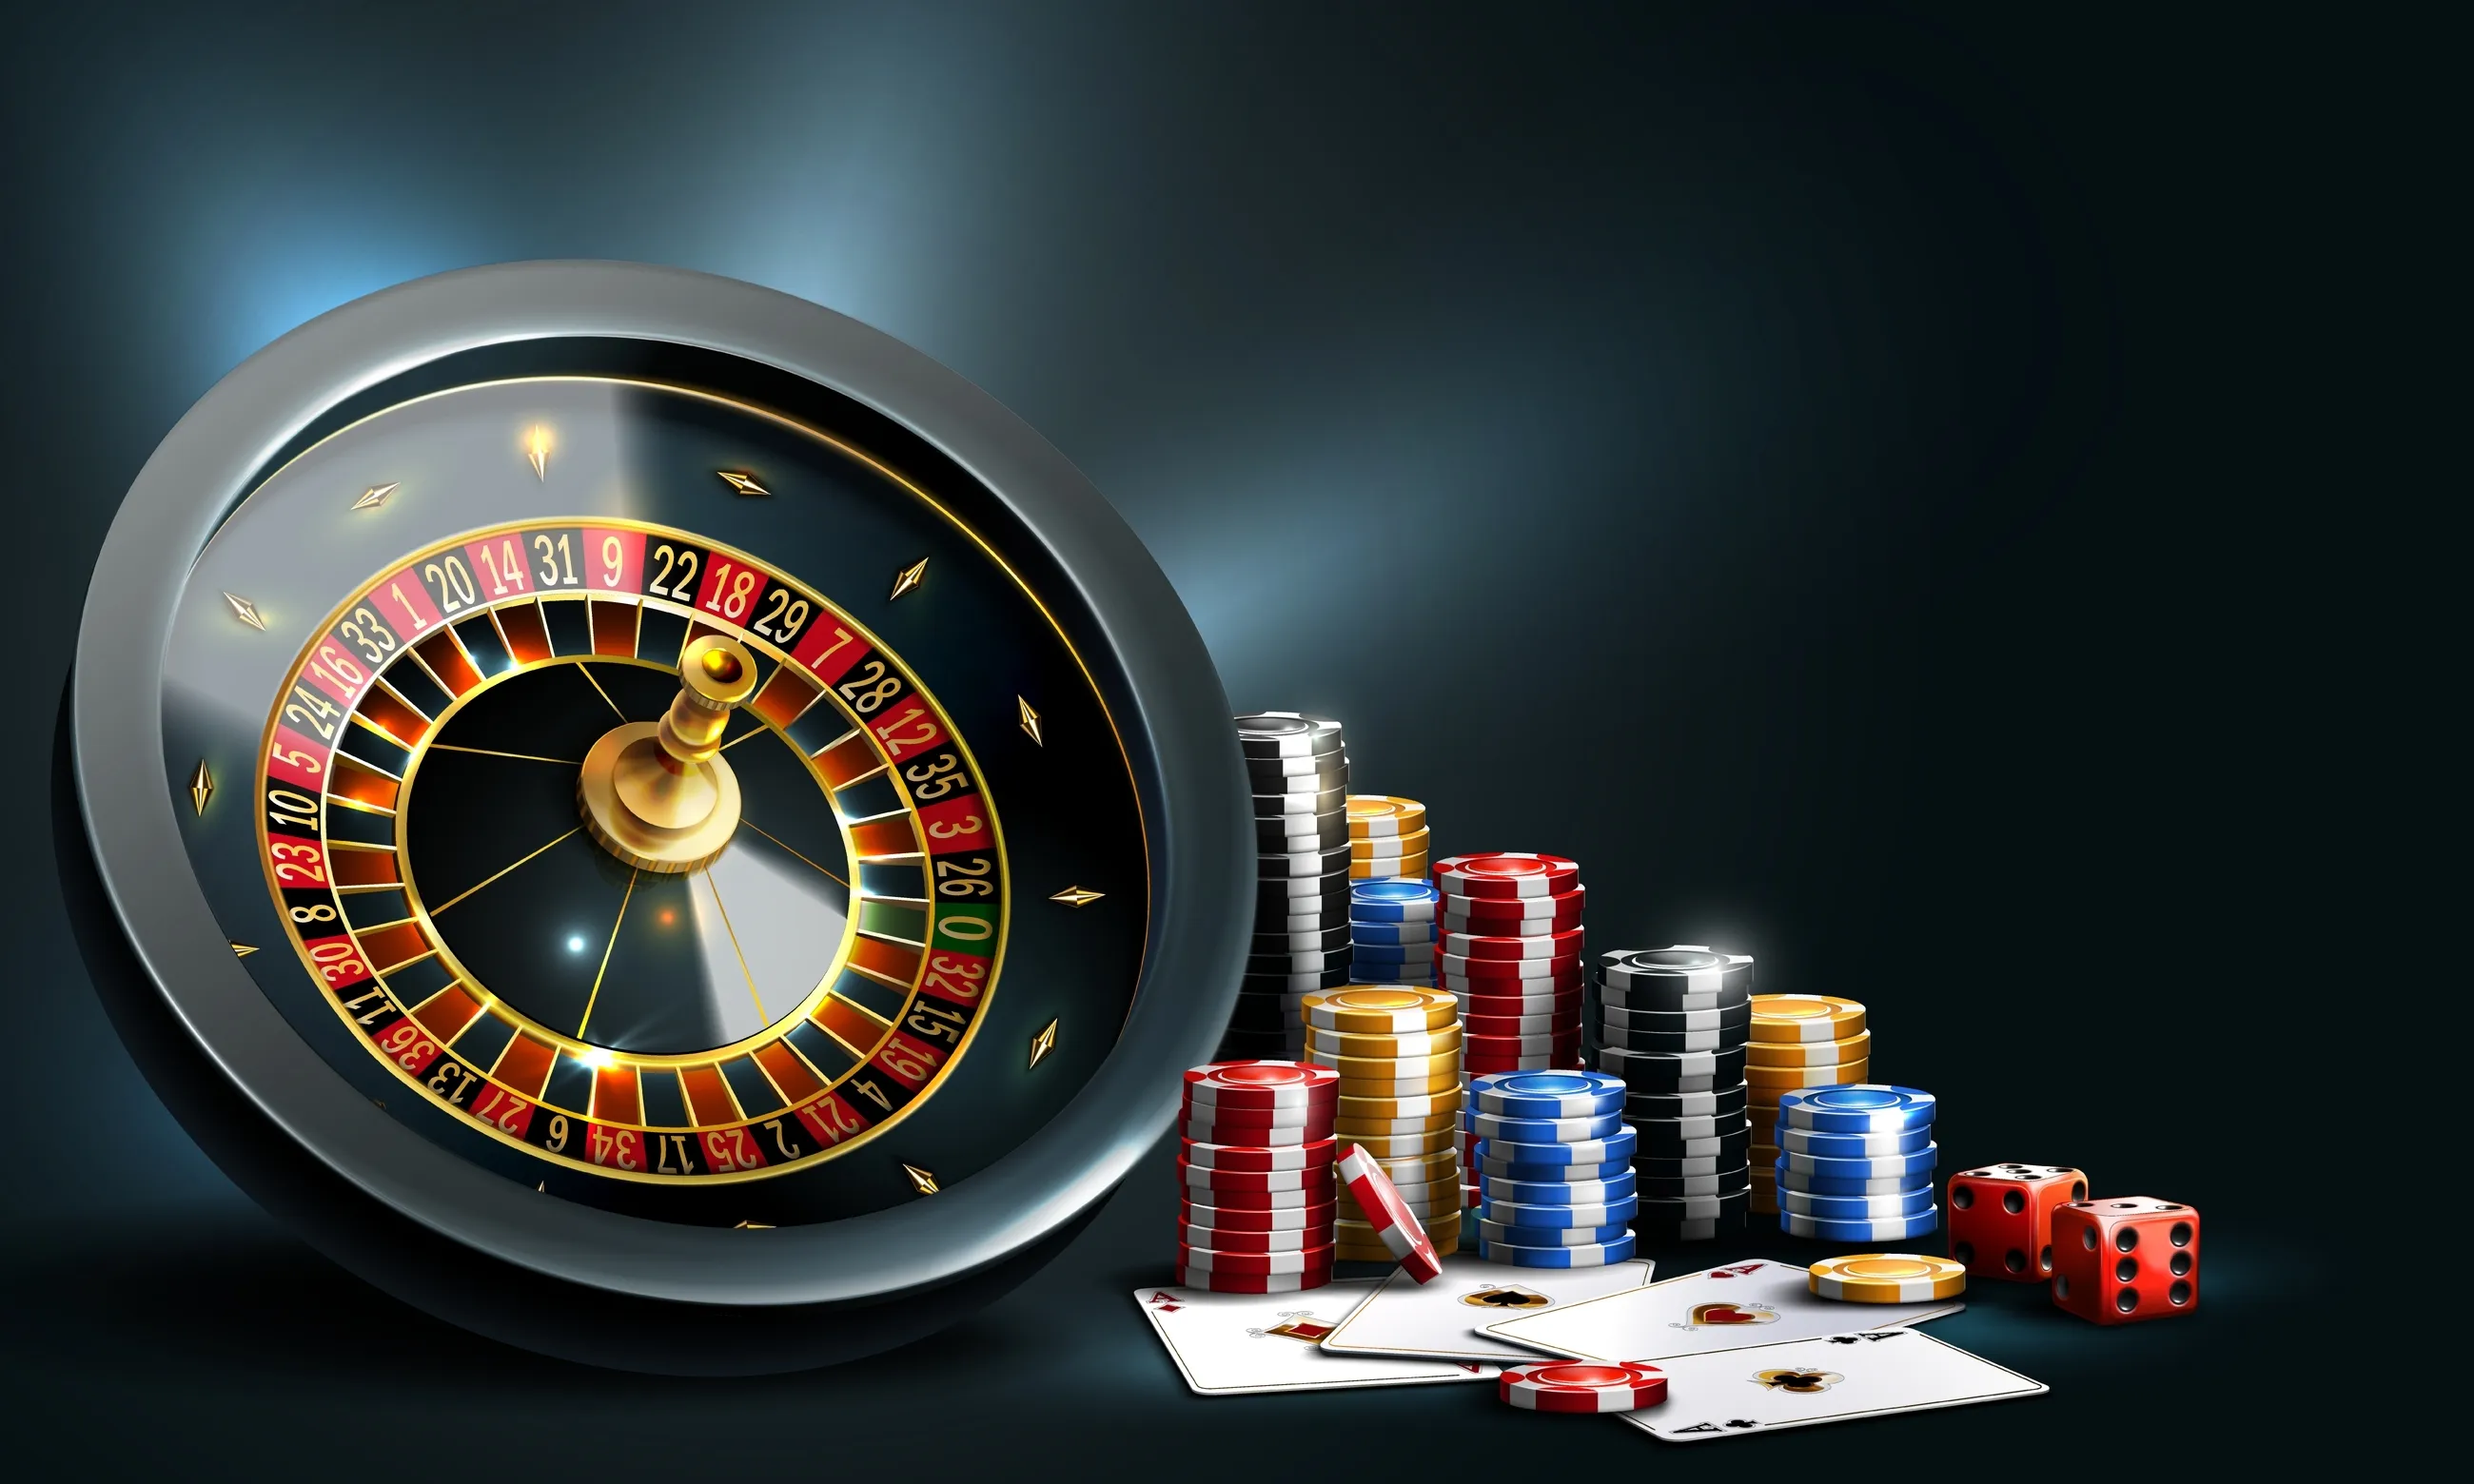 Офлайн-казино предлагают ограниченный выбор игр